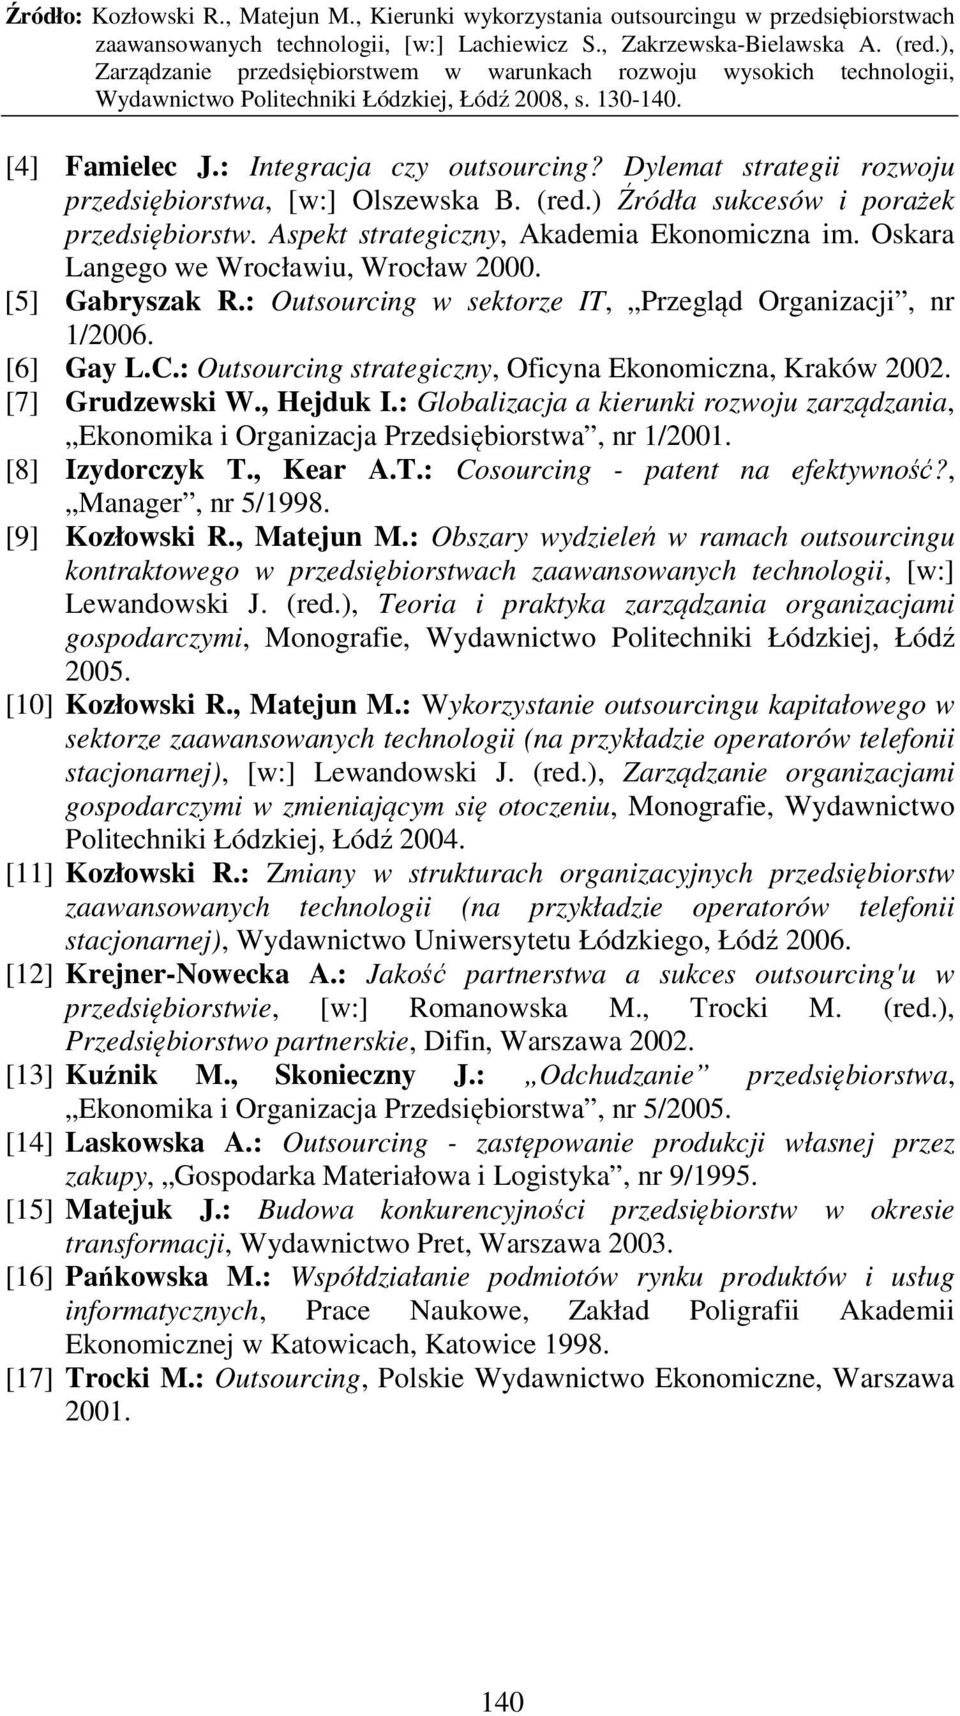 : Outsourcing strategiczny, Oficyna Ekonomiczna, Kraków 2002. [7] Grudzewski W., Hejduk I.: Globalizacja a kierunki rozwoju zarządzania, Ekonomika i Organizacja Przedsiębiorstwa, nr 1/2001.